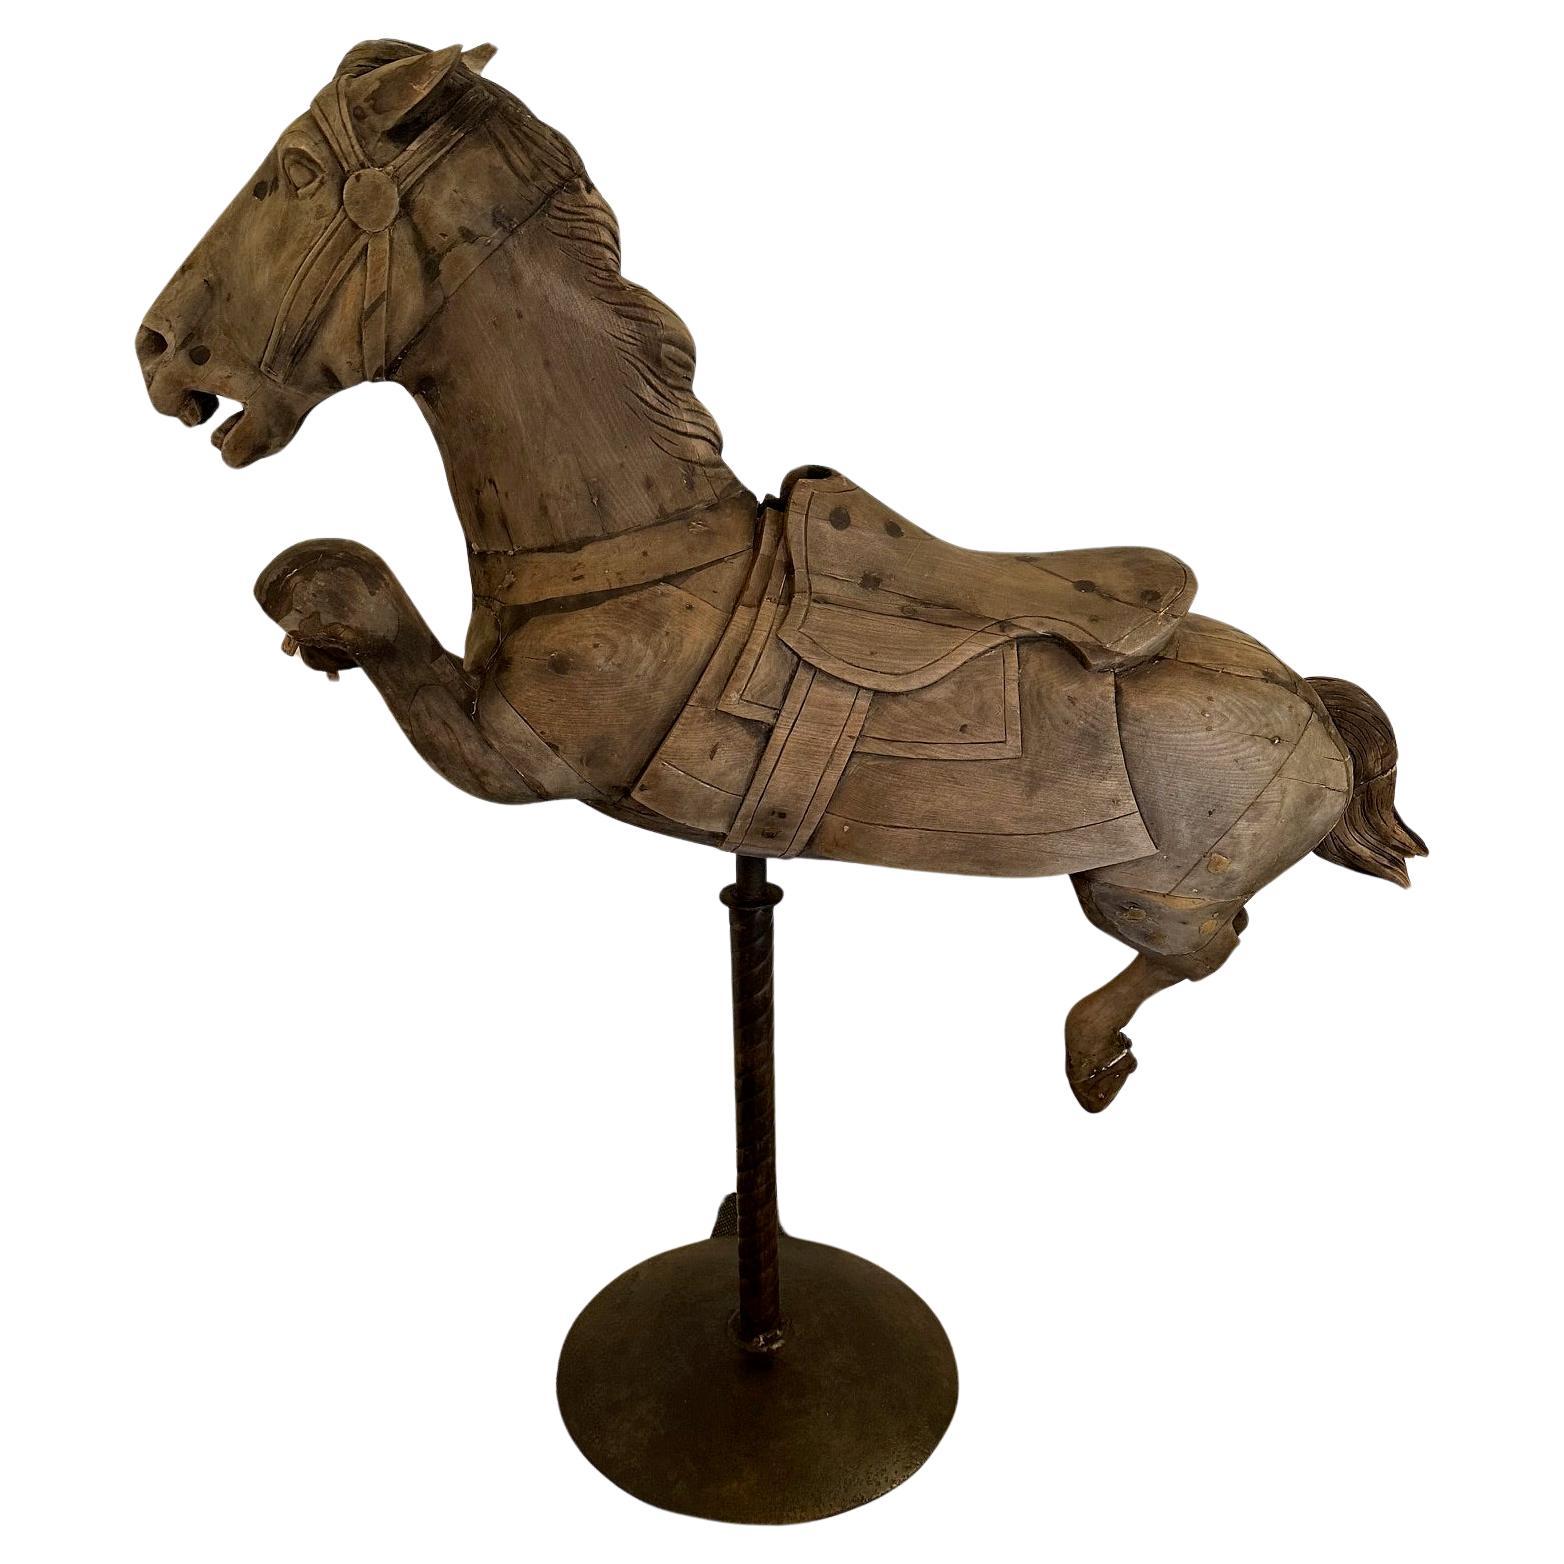 Seltene antike Distressed Karussell Pferd auf Eisen Stand Skulptur